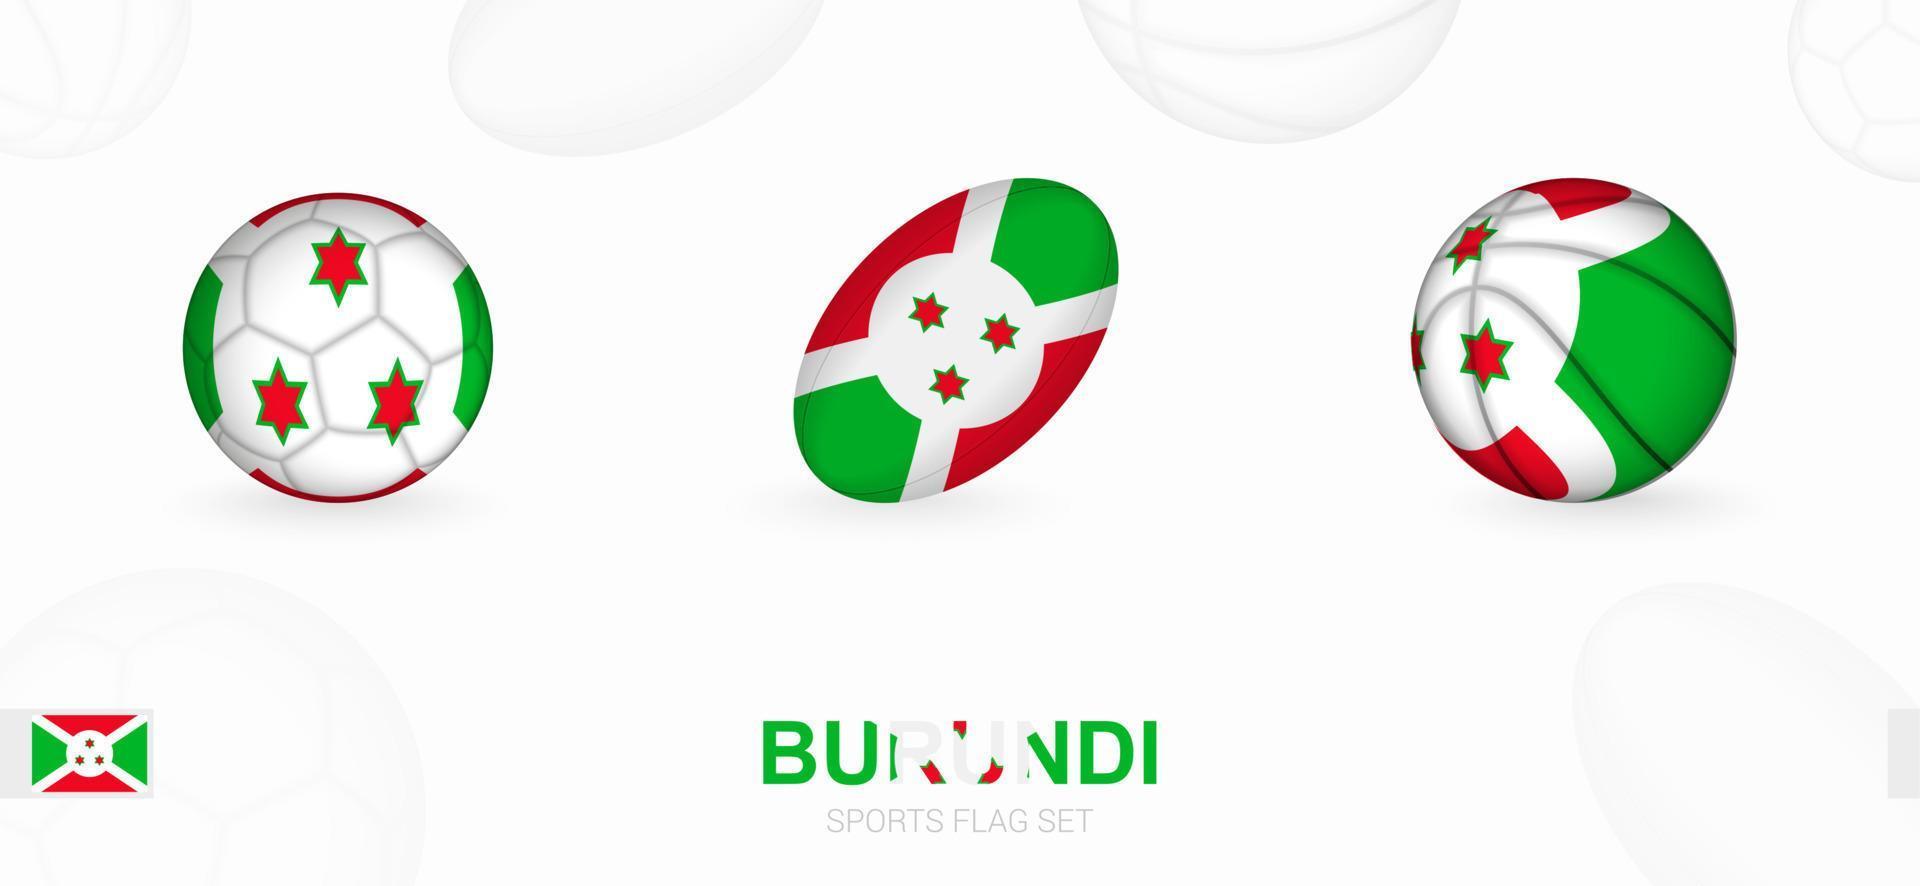 sporter ikoner för fotboll, rugby och basketboll med de flagga av burundi. vektor